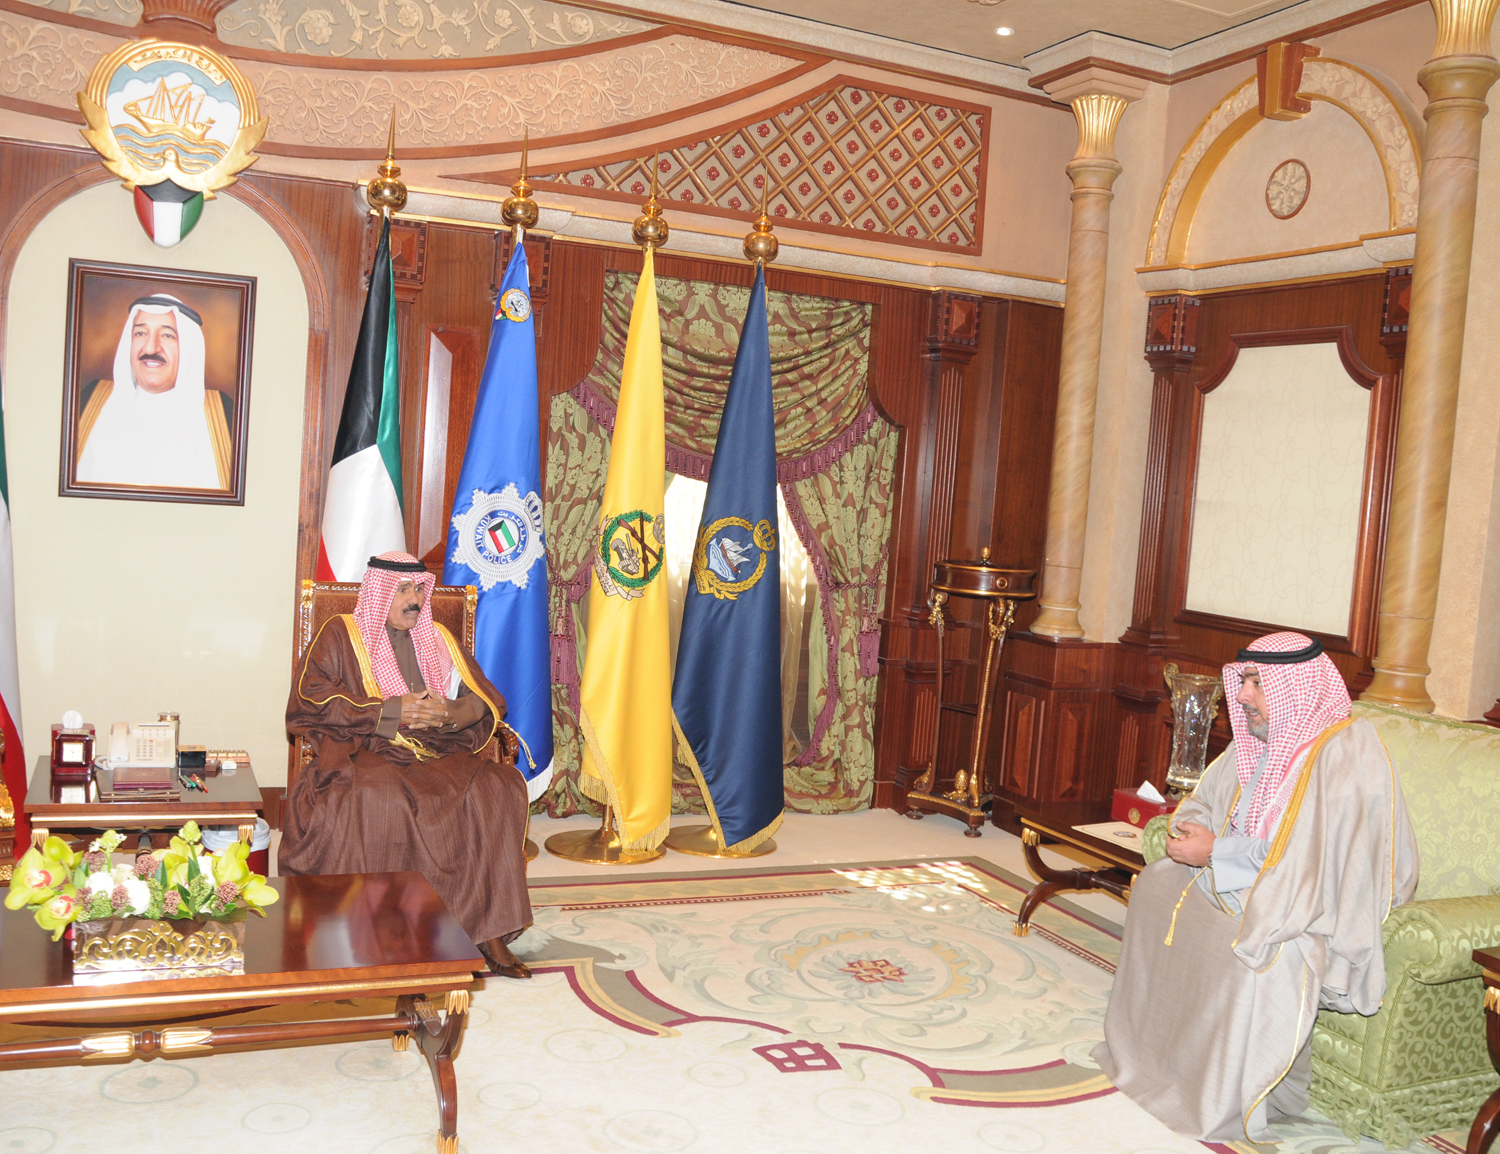 His Highness the Crown Prince Sheikh Nawaf Al-Ahmad Al-Jaber Al-Sabah receives National Security Bureau Chief Sheikh Thamer Ali Salem Al-Sabah